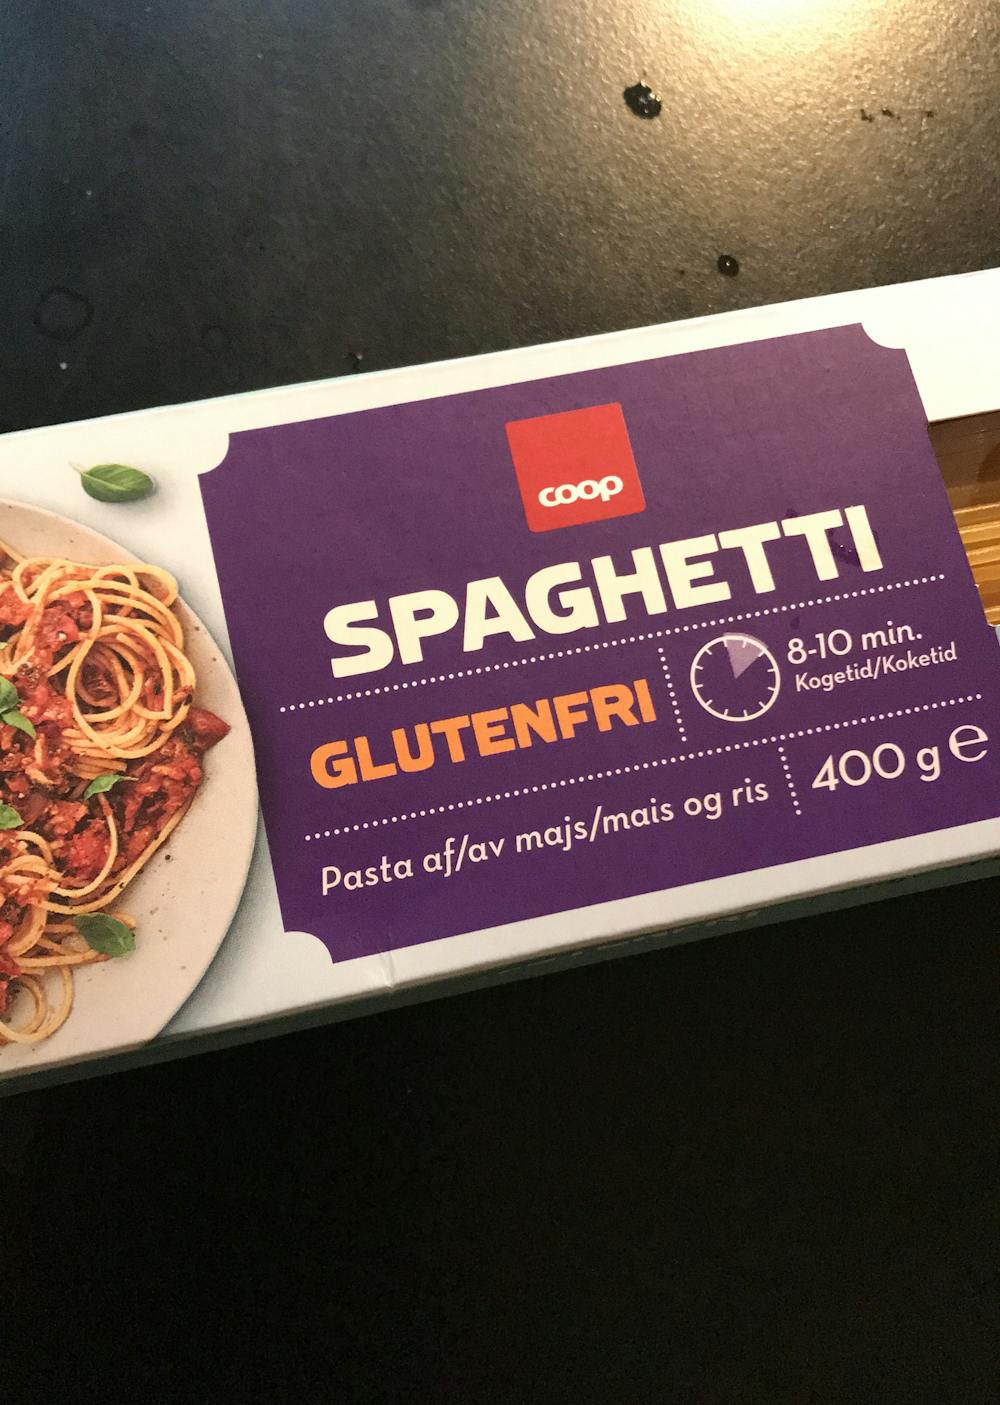 Spaghetti glutenfri, Coop